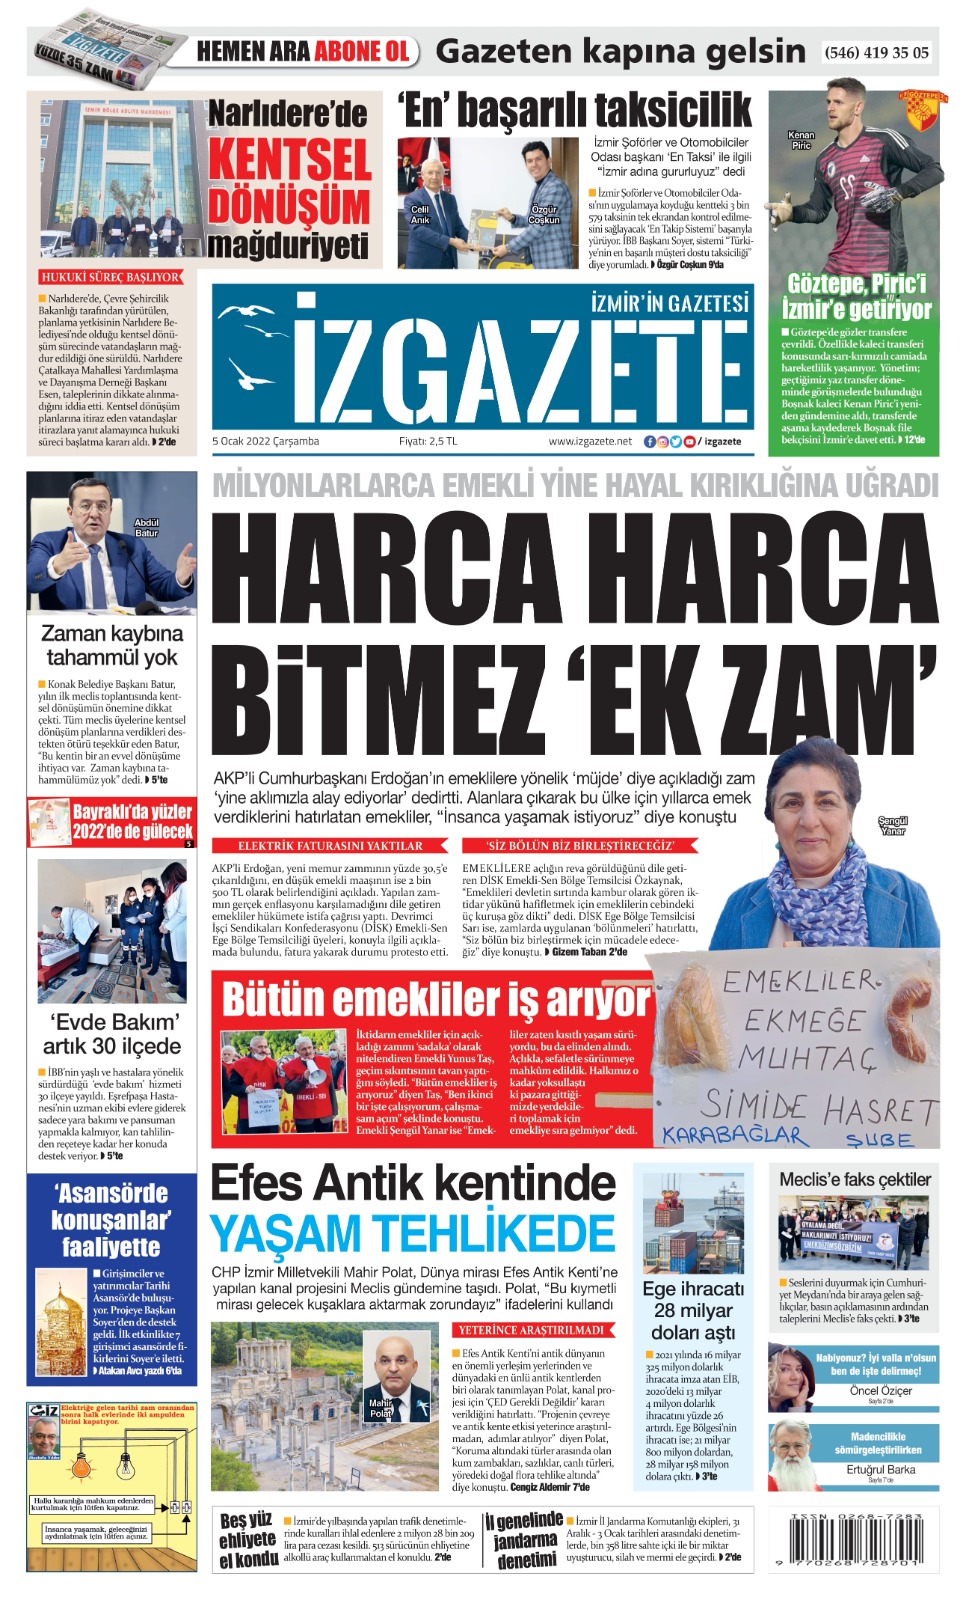 İz Gazete - İzmir'in Gazetesi - 05.01.2022 Manşeti